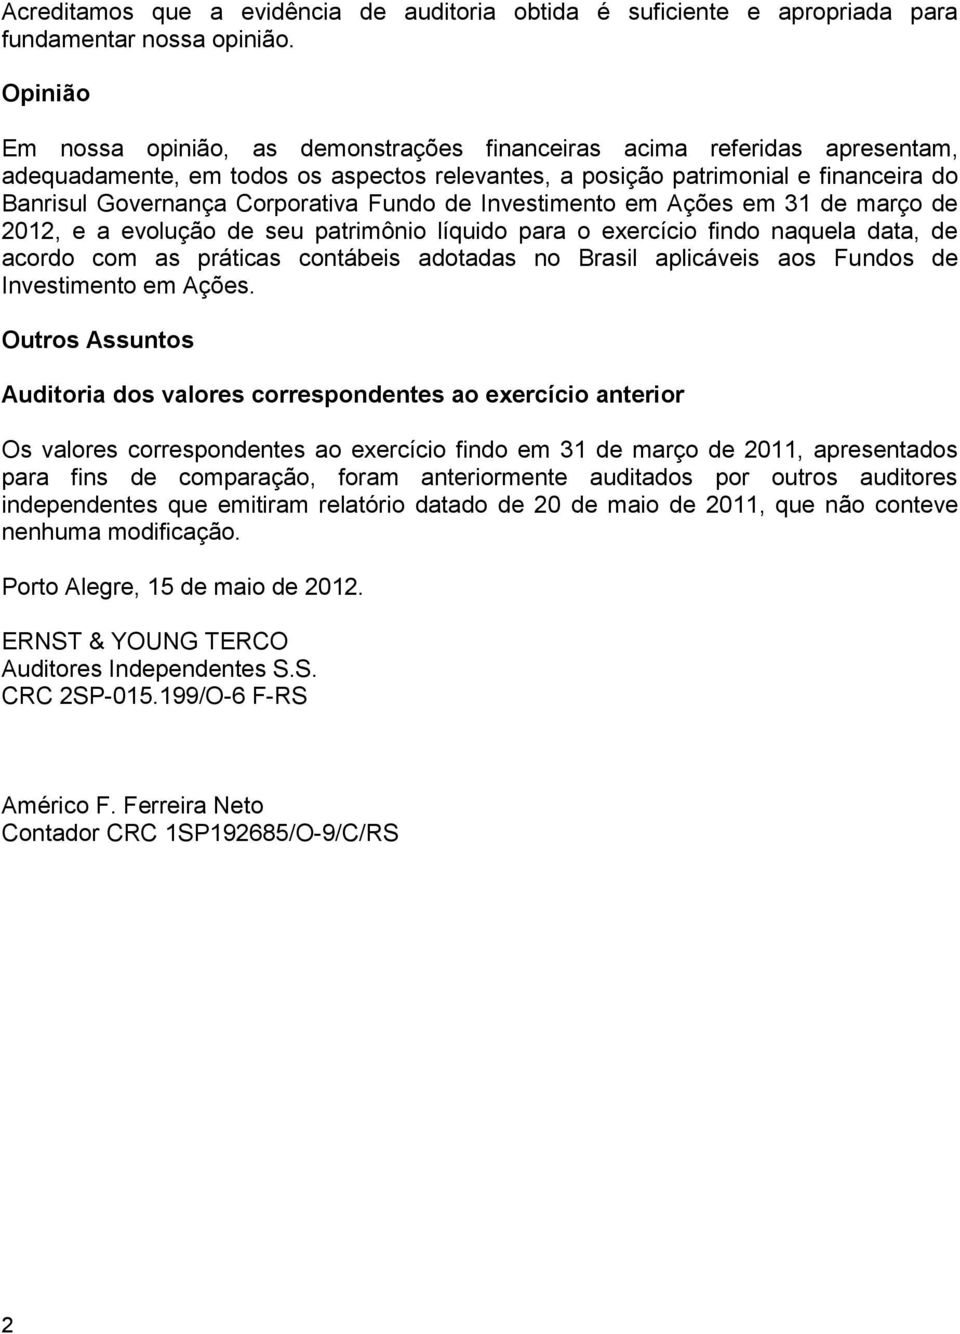 Corporativa Fundo de Investimento em Ações em 31 de março de 2012, e a evolução de seu patrimônio líquido para o exercício findo naquela data, de acordo com as práticas contábeis adotadas no Brasil